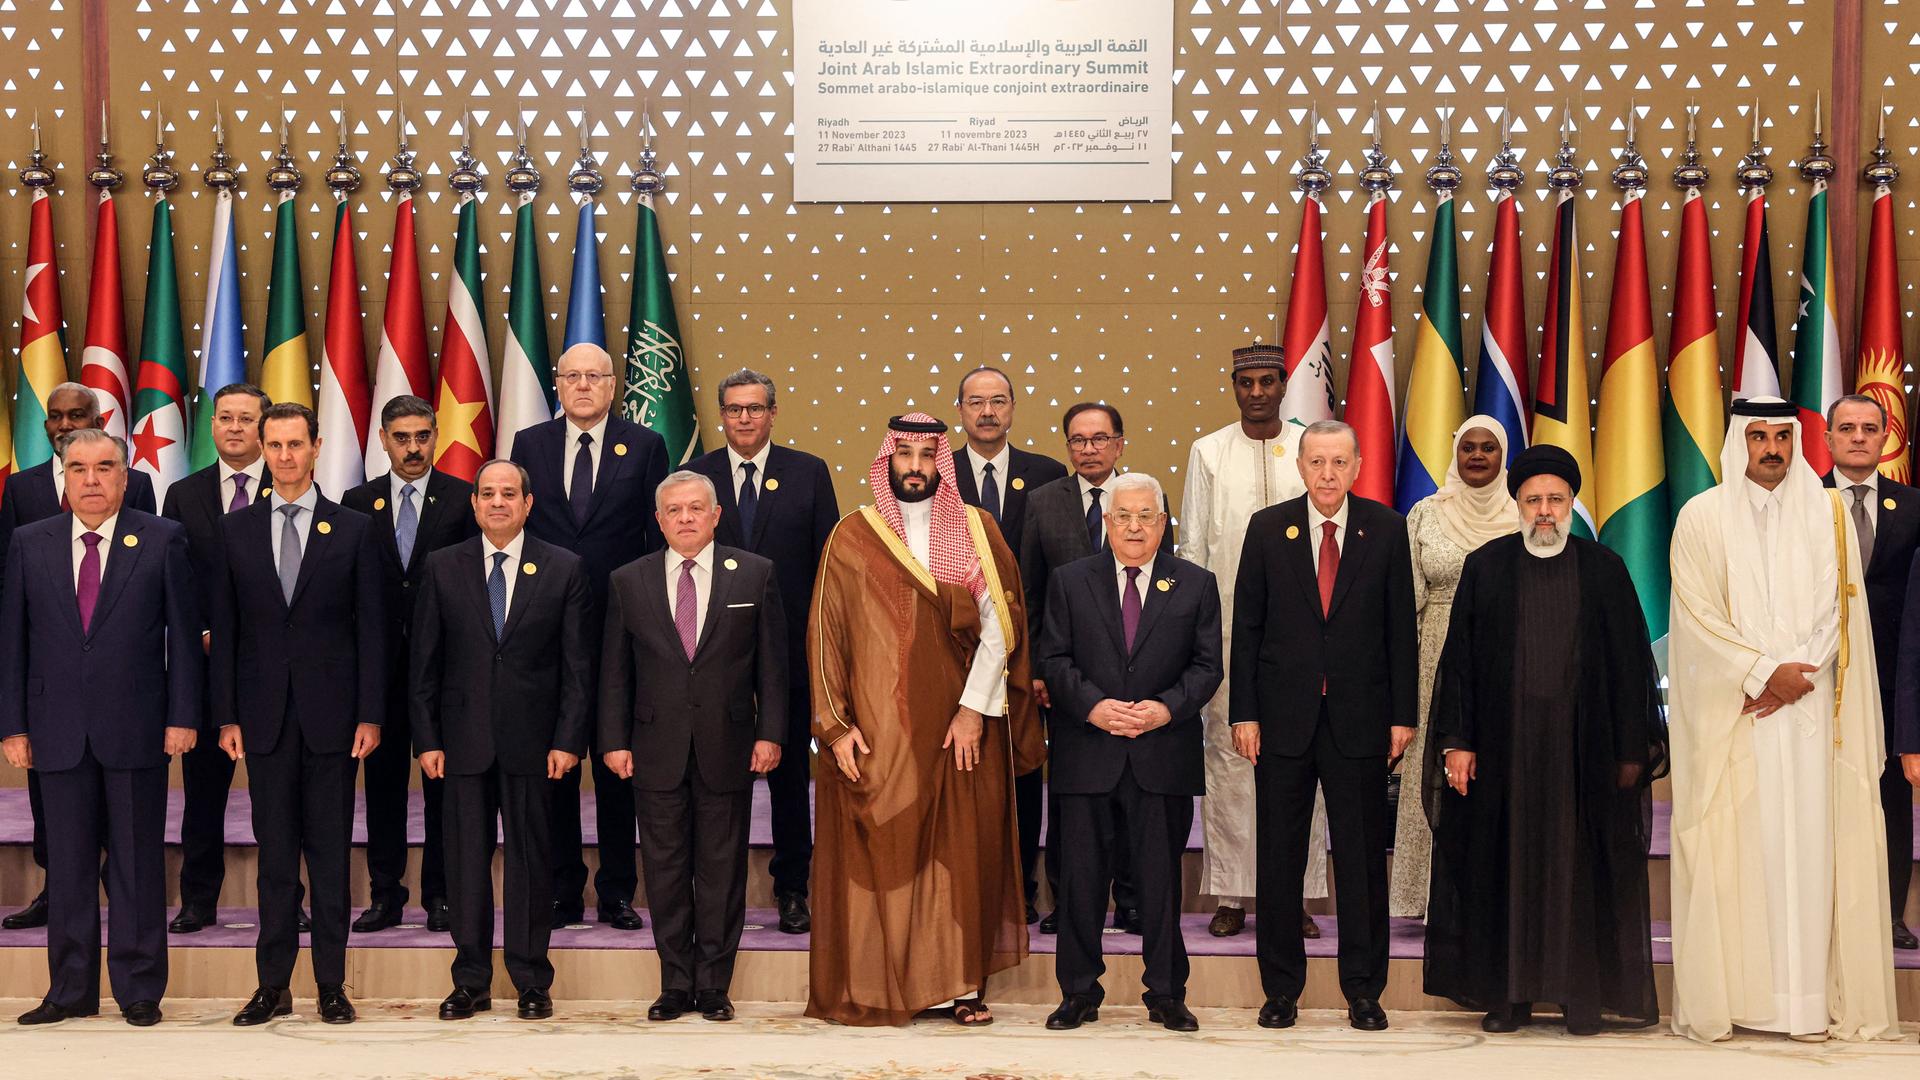 Zu sehen sind Teilnehmer des Gipfeltreffens in Saudi-Araabien, darunter der saudische Kronprinz bin Salman und der türkische Präsident Erdogan.